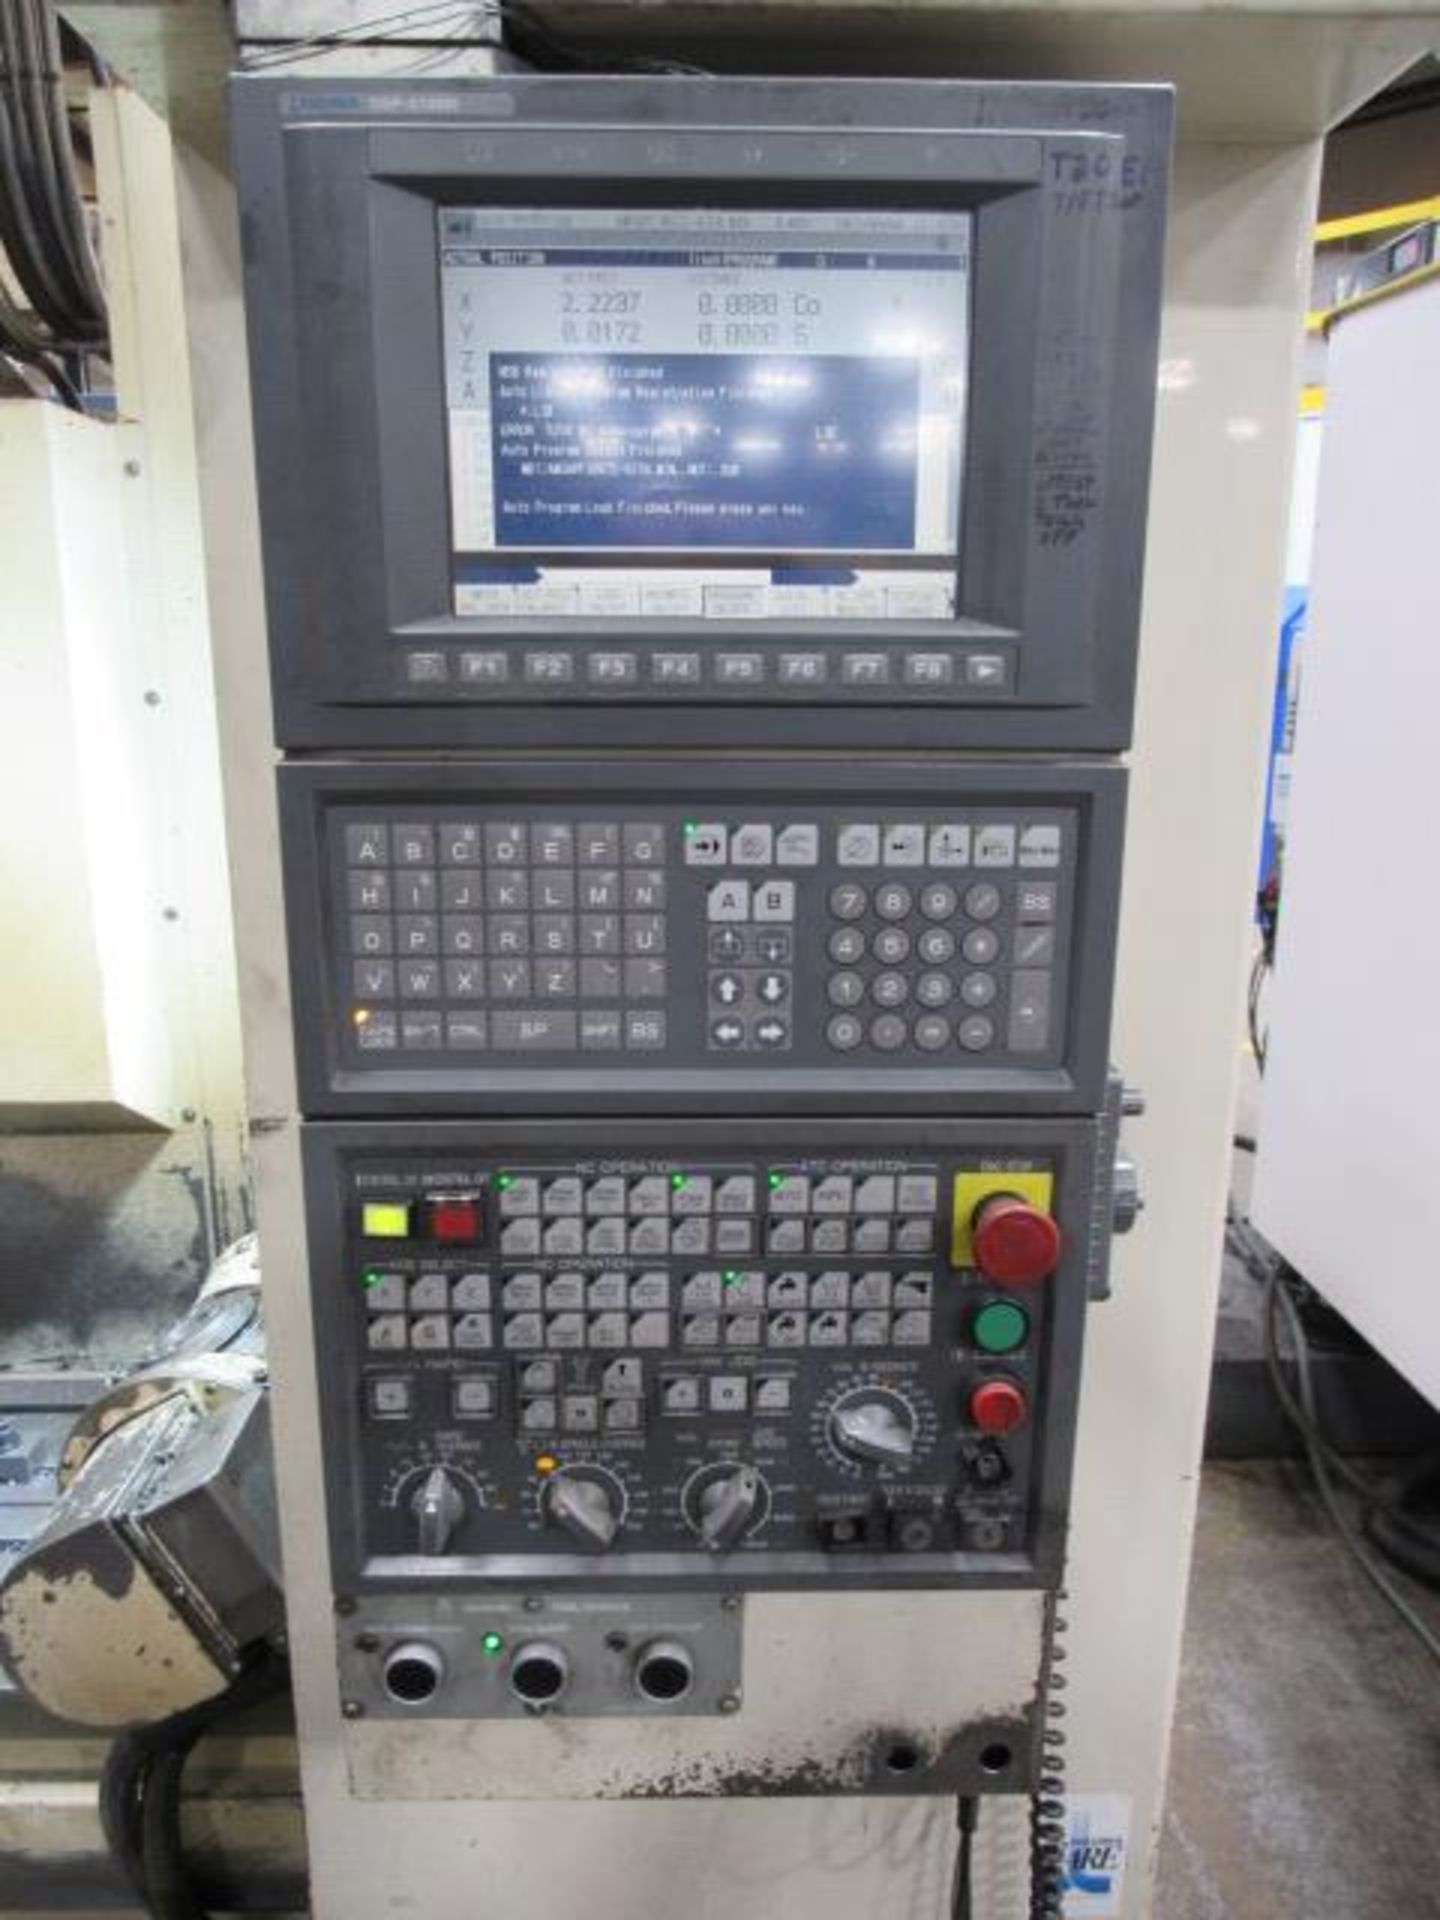 Okuma MC-V4020 5 Axis CNC Vertical Machining Center - Image 6 of 18